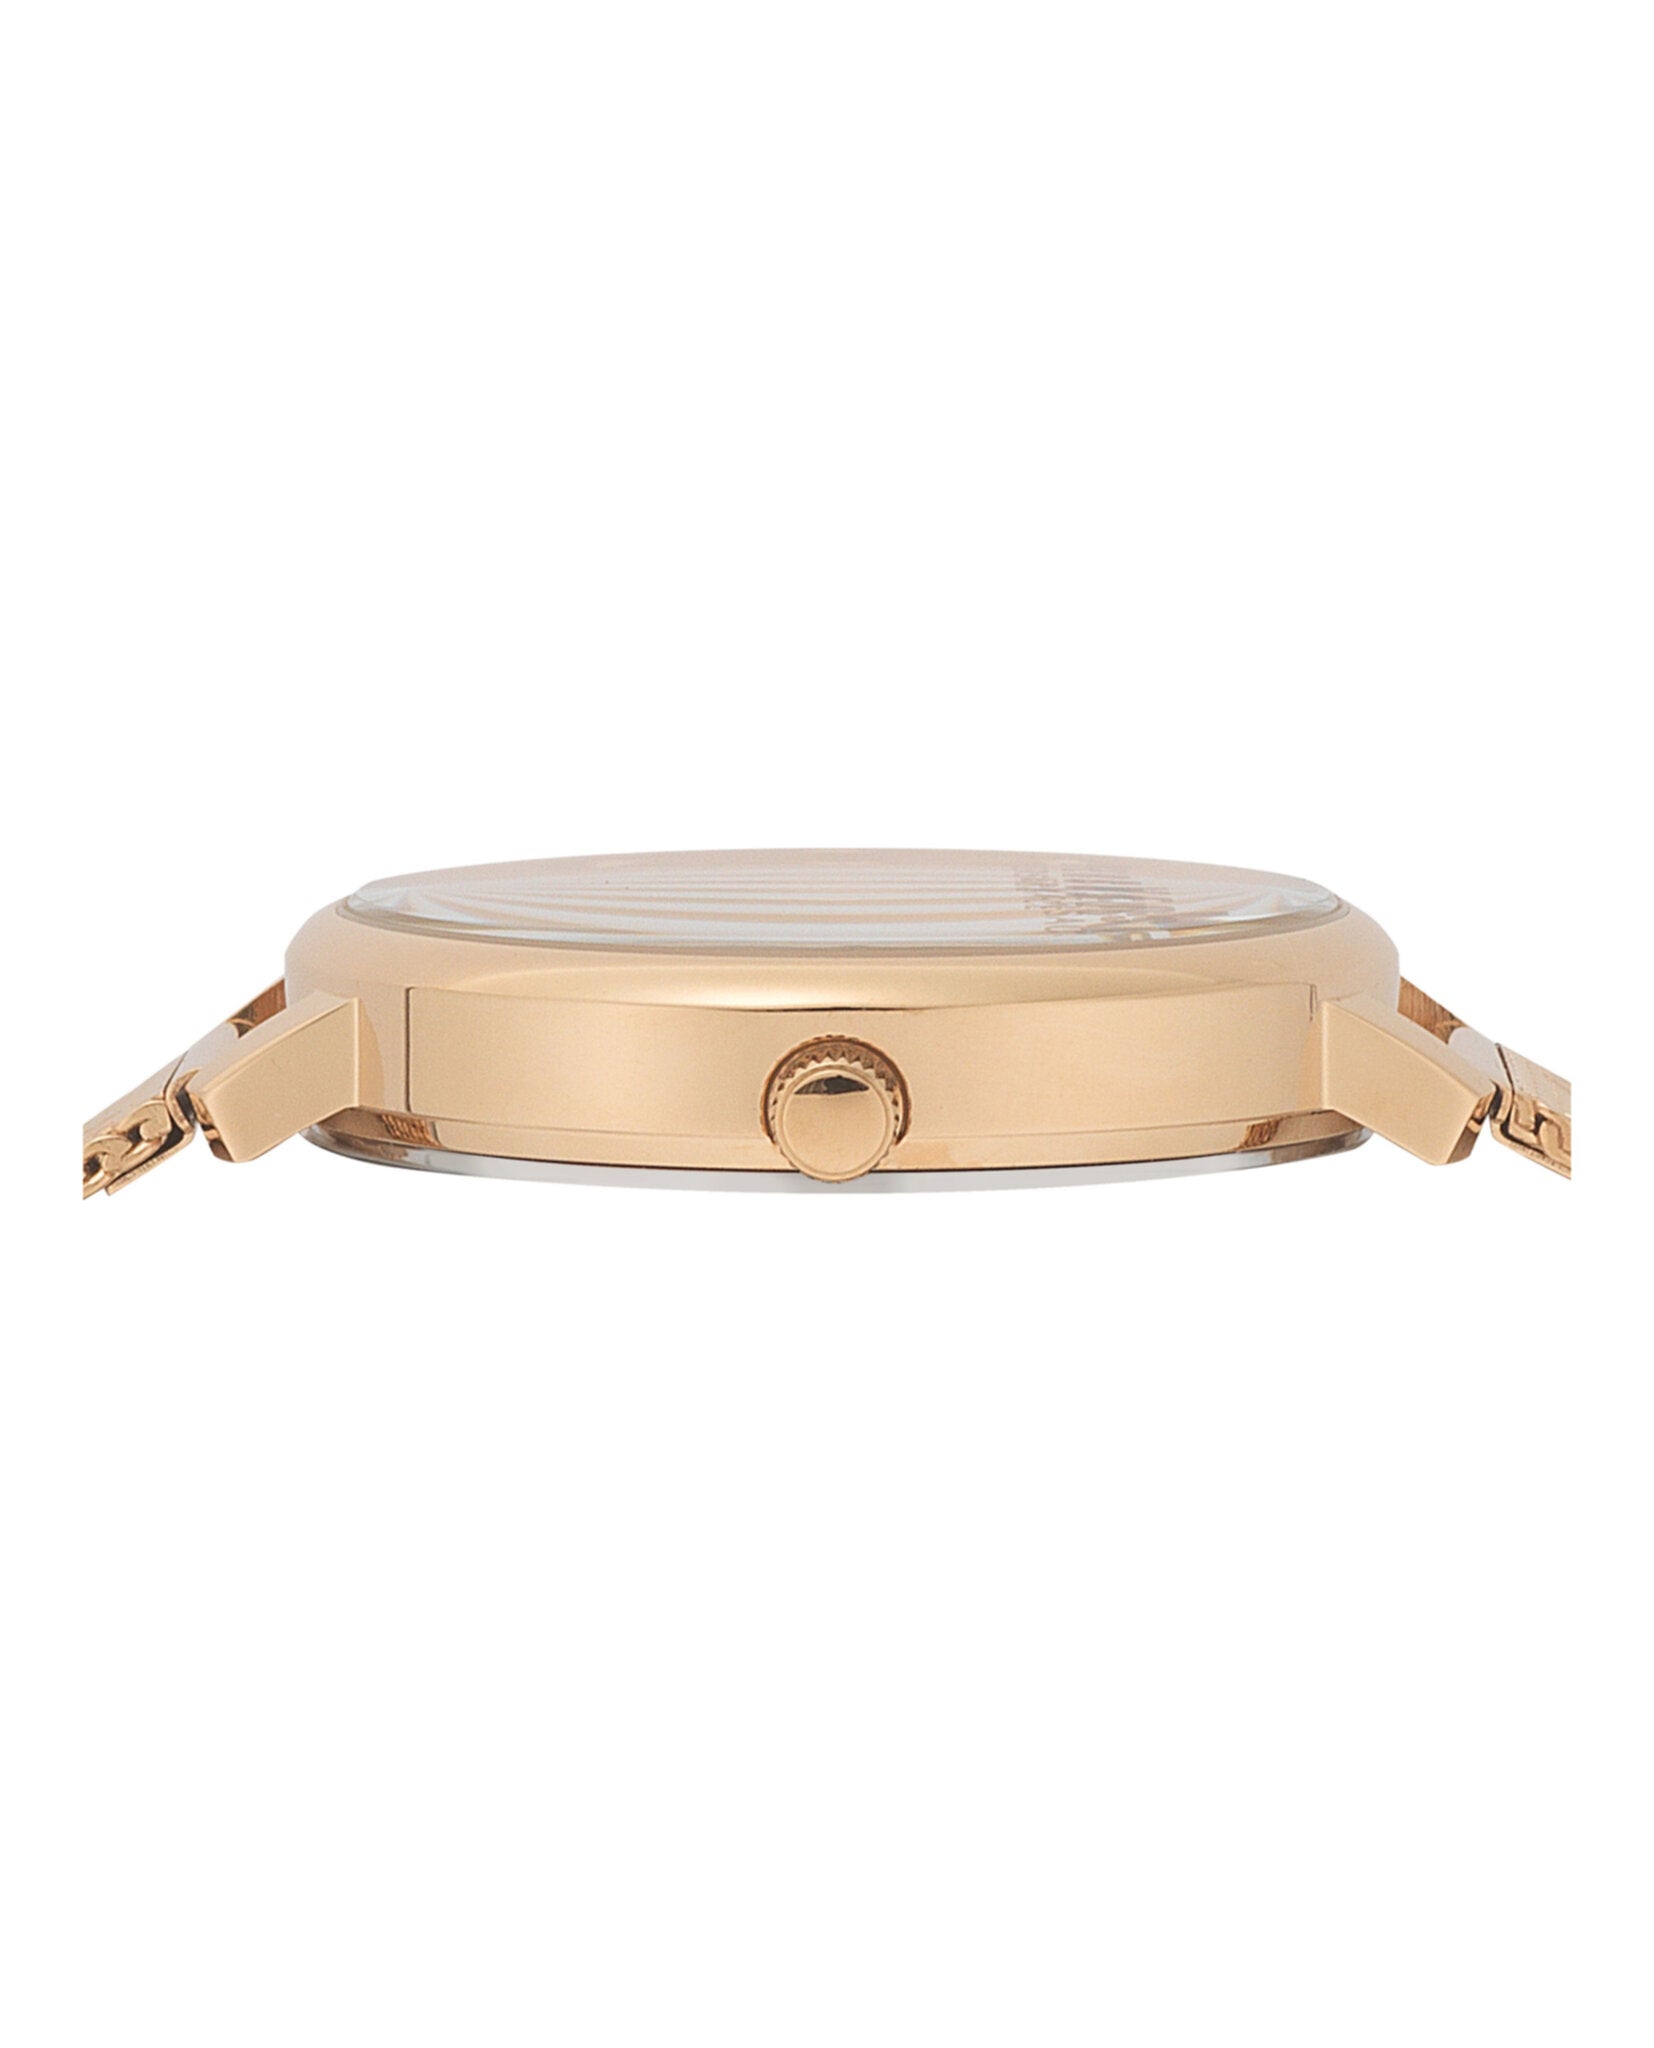 La Villette Bracelet Watch